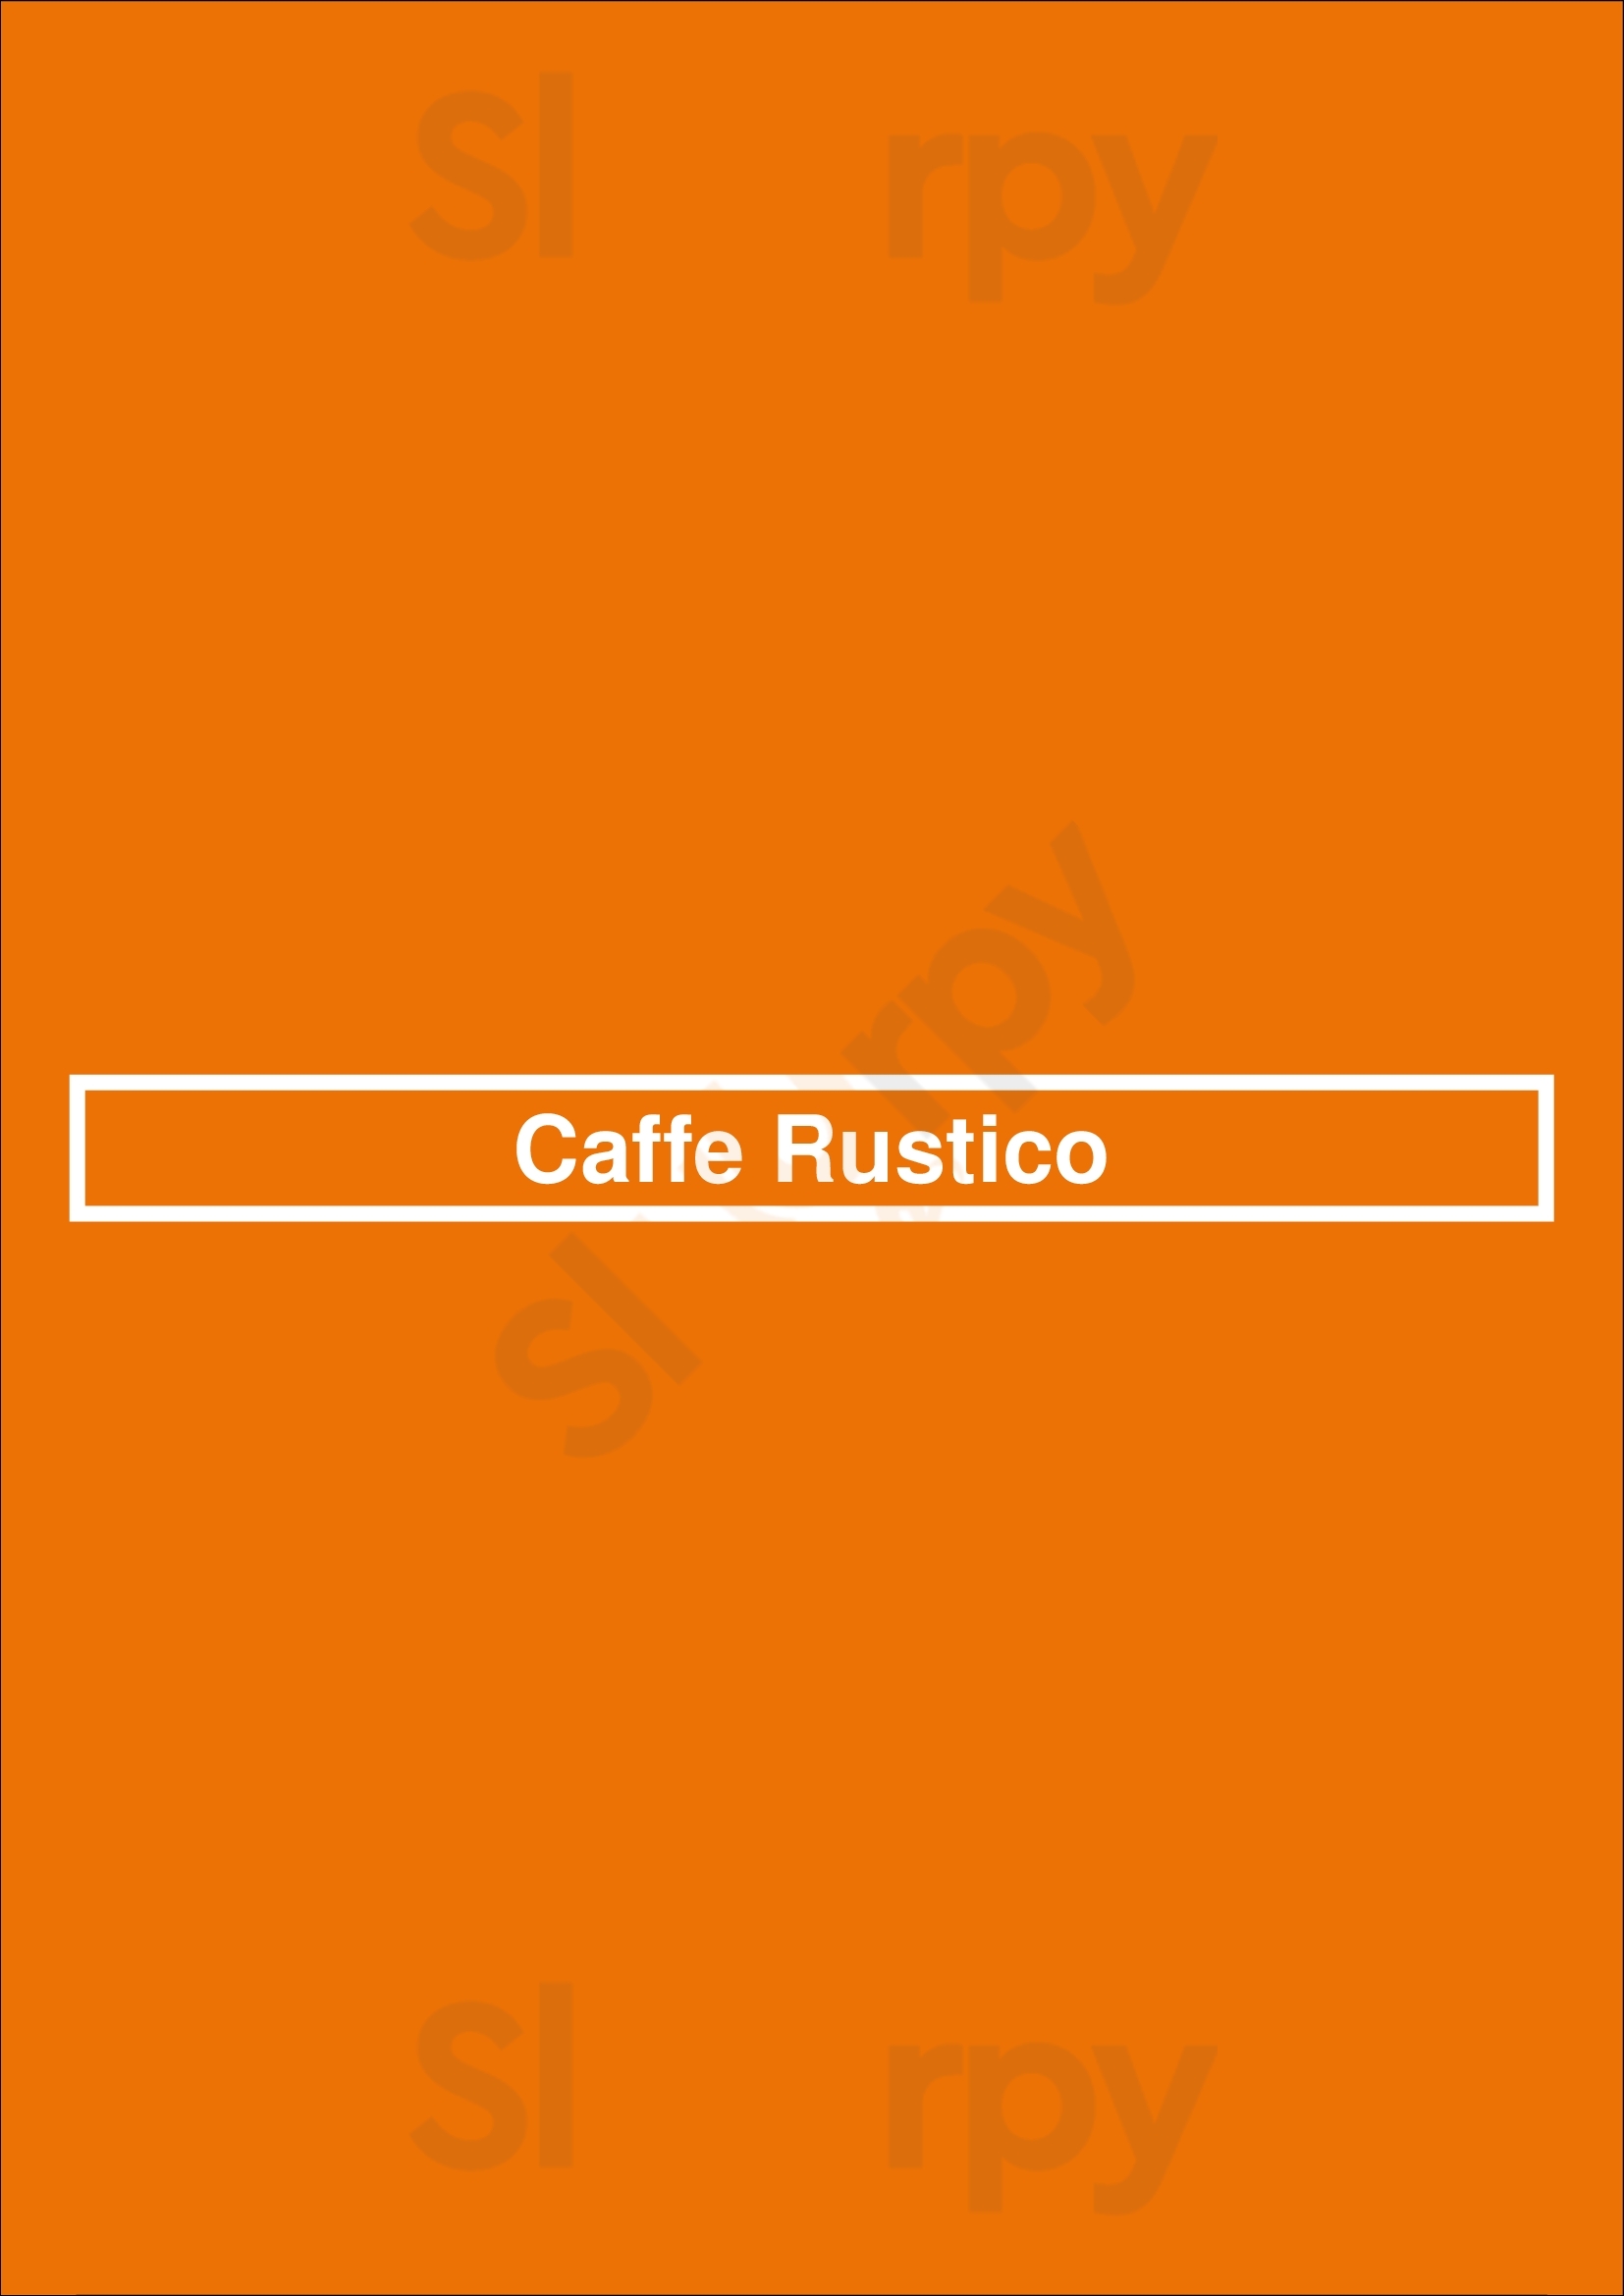 Caffe Rustico Vancouver Menu - 1